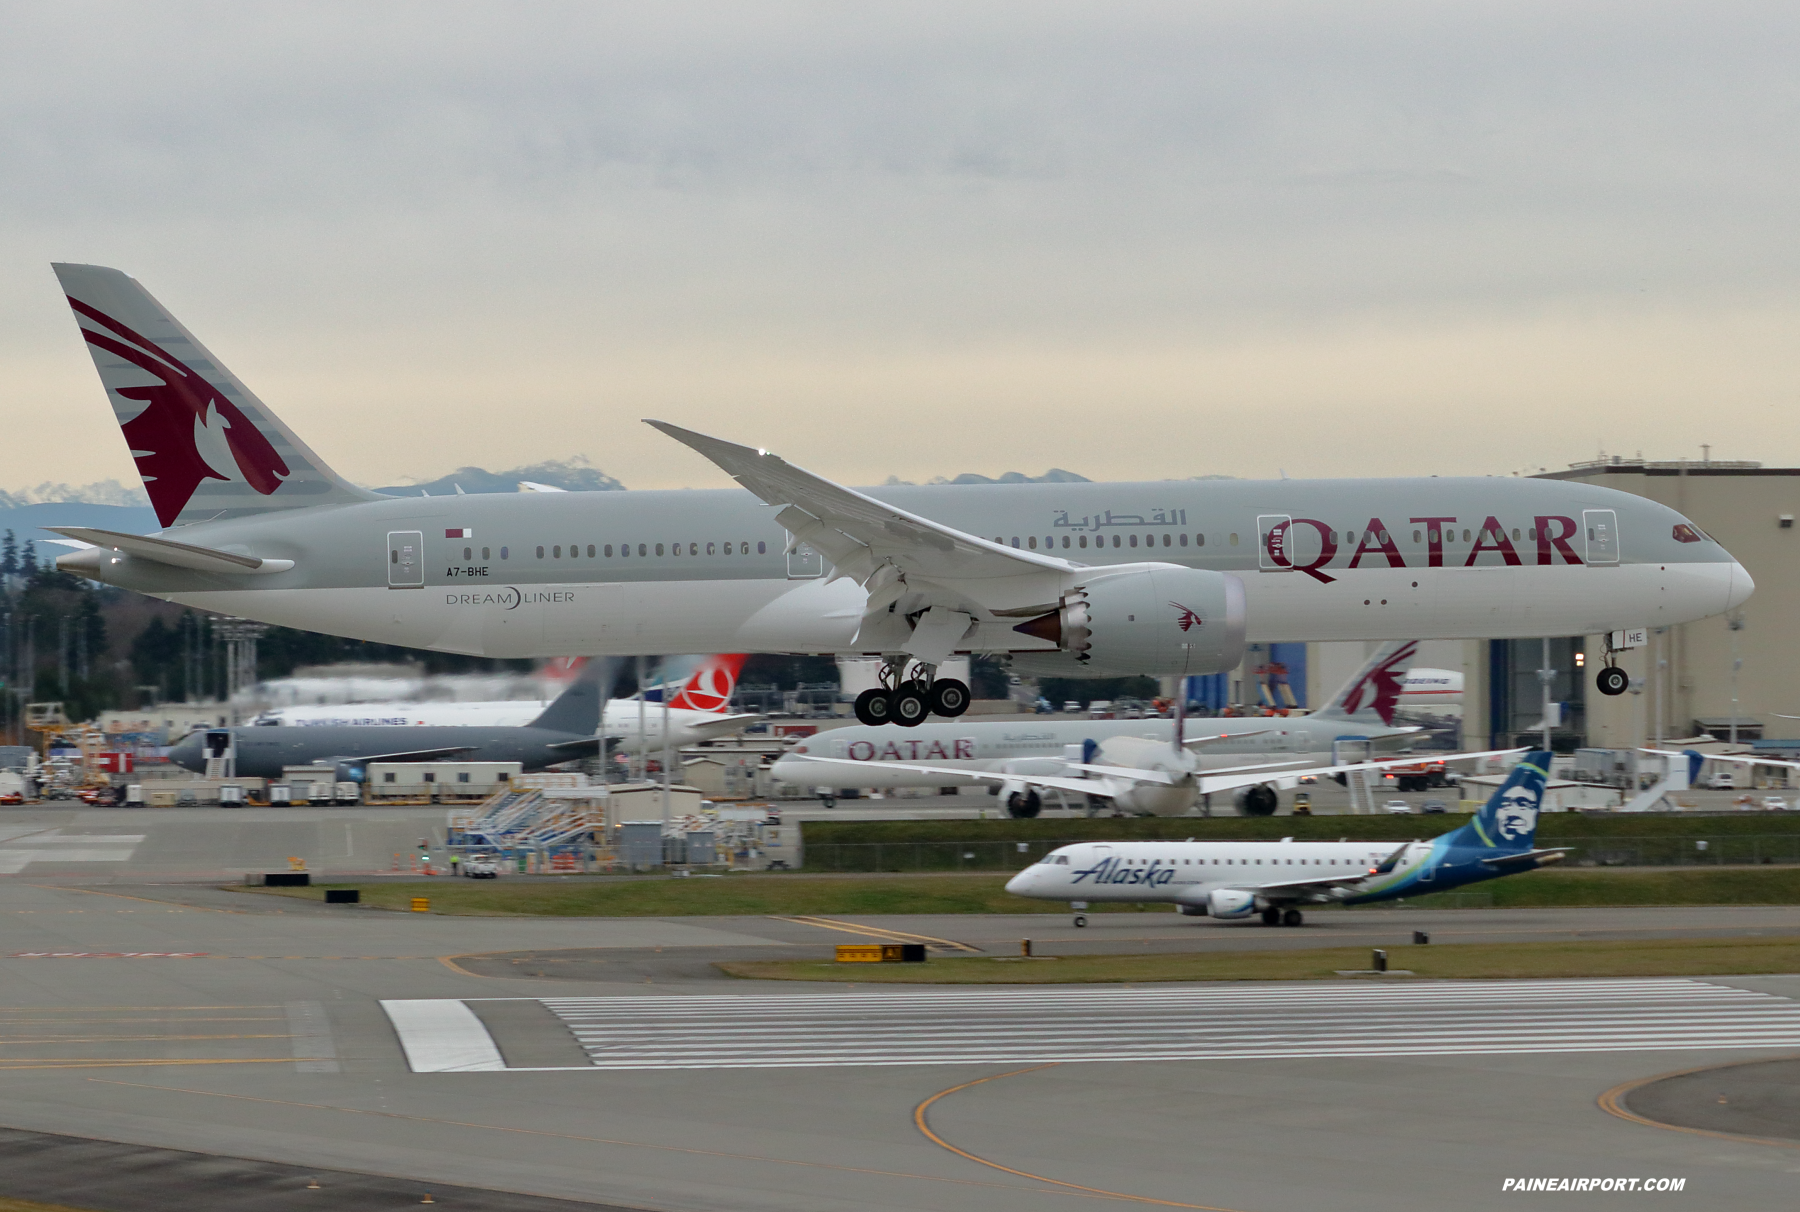 Qatar Airways 787-9 A7-BHE at Paine Field